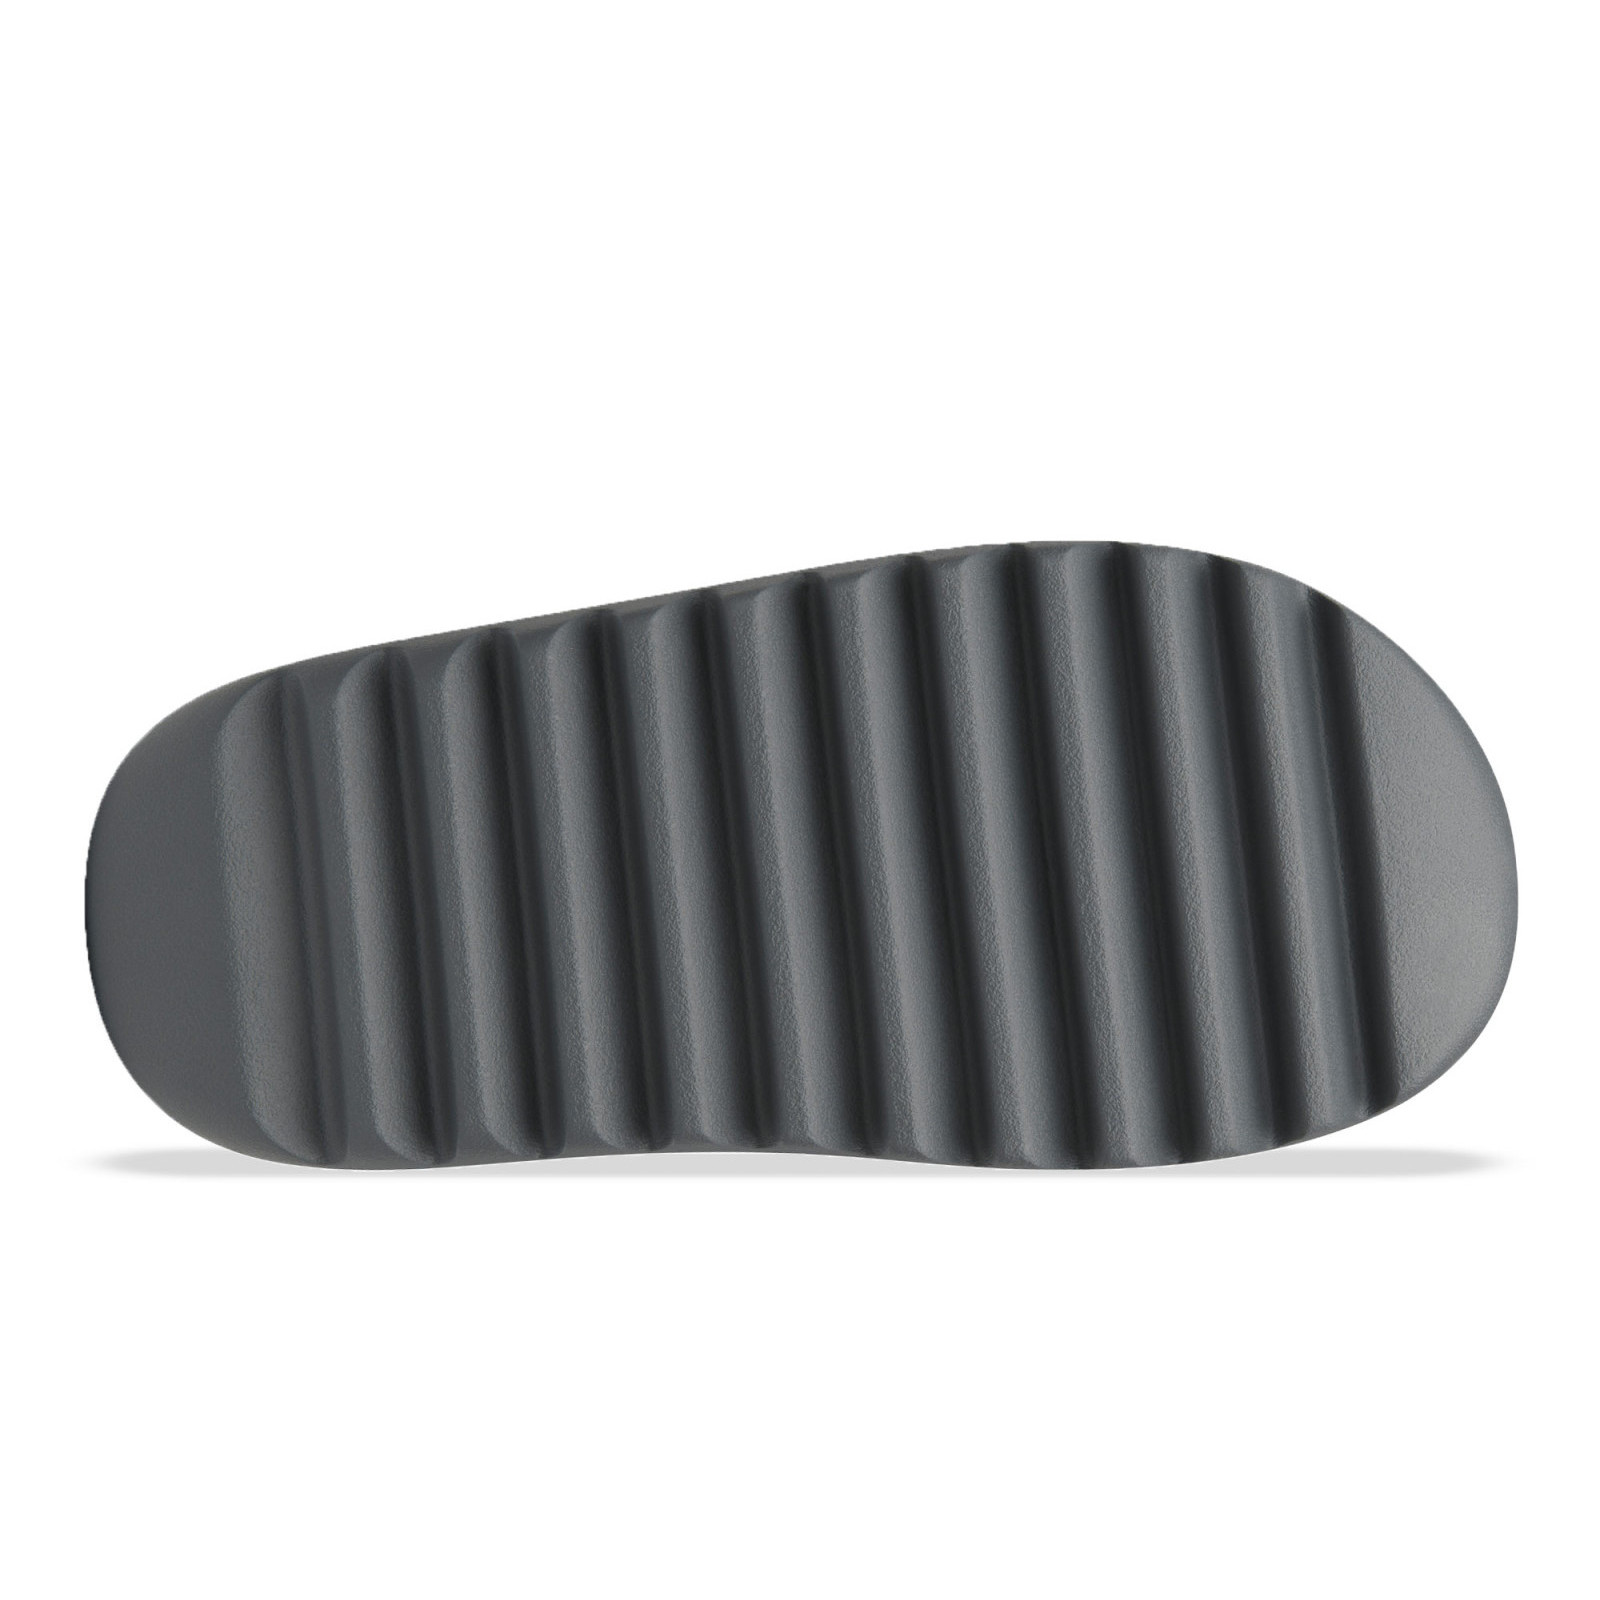 Adidas Yeezy Slide
« Slate Grey »